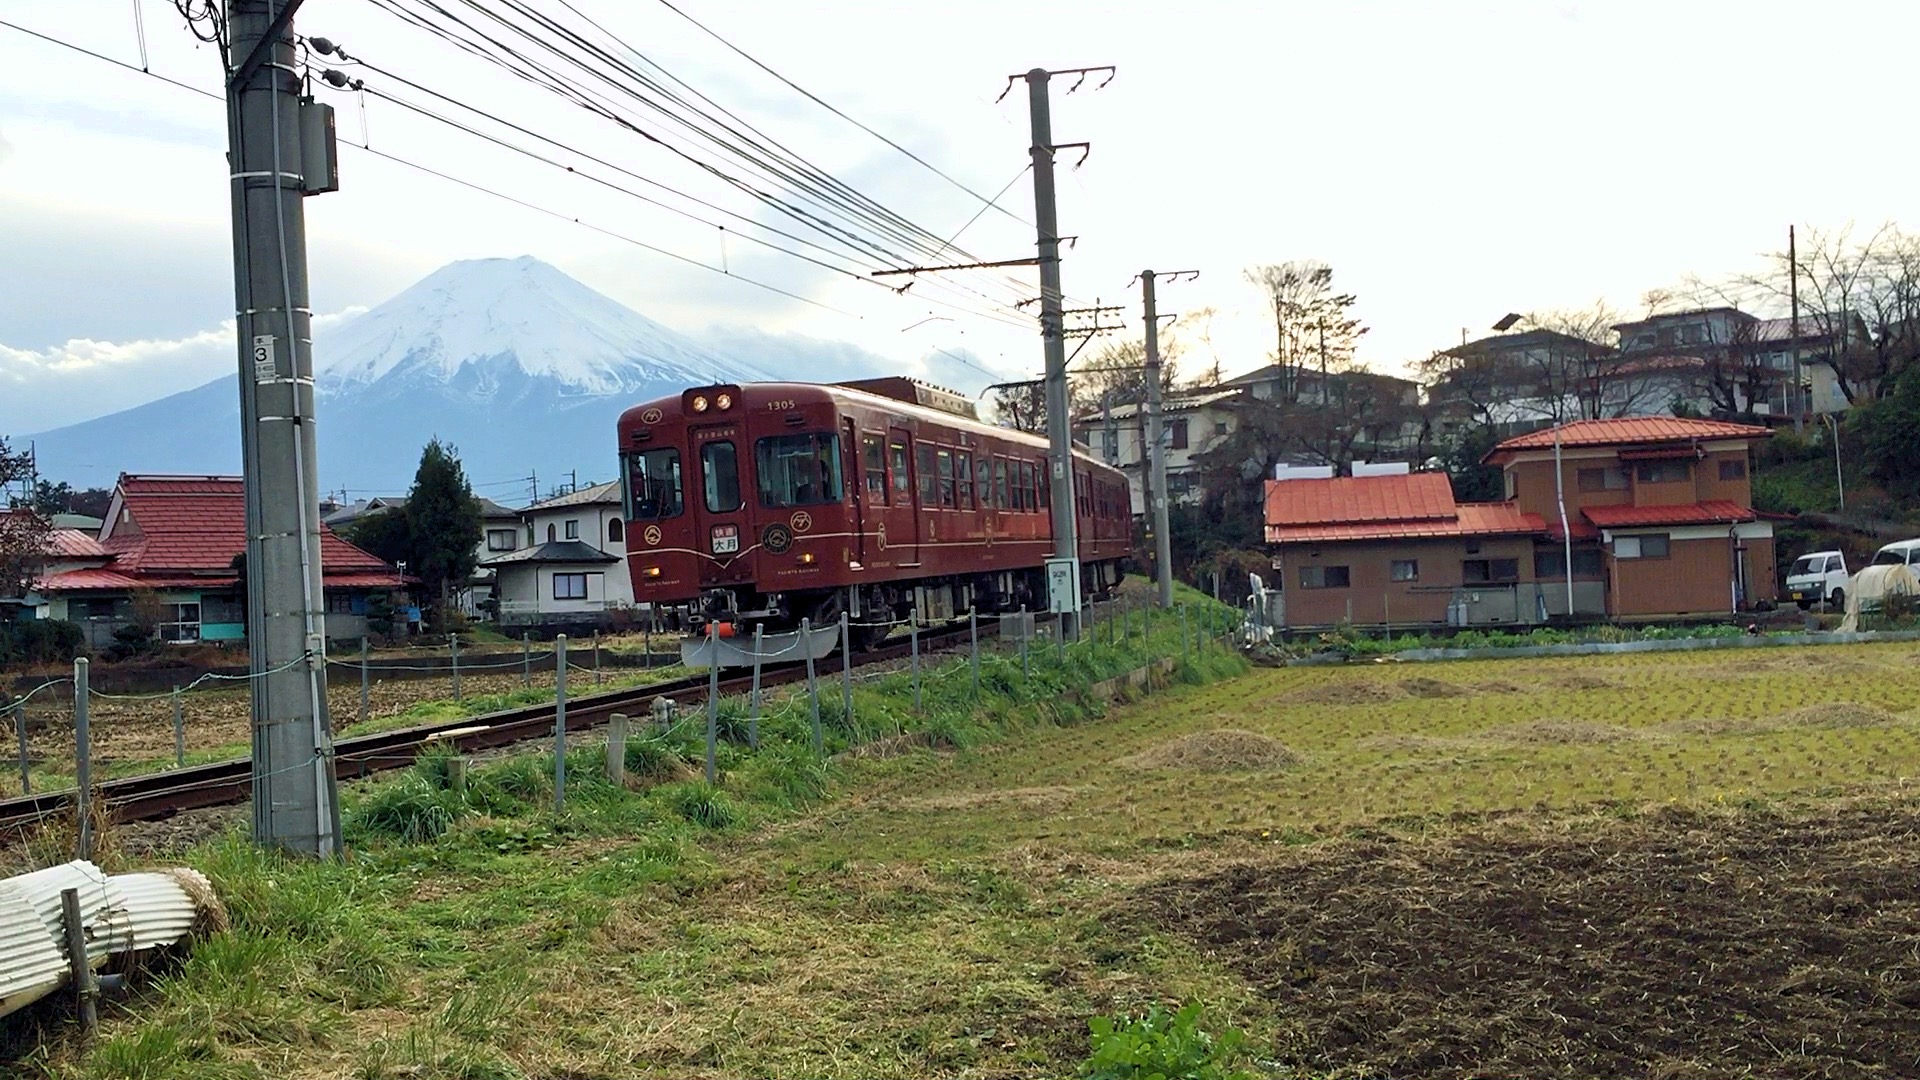 Ein Zug von Fujikyu Railway mit dem Fuji im Hintergrund.